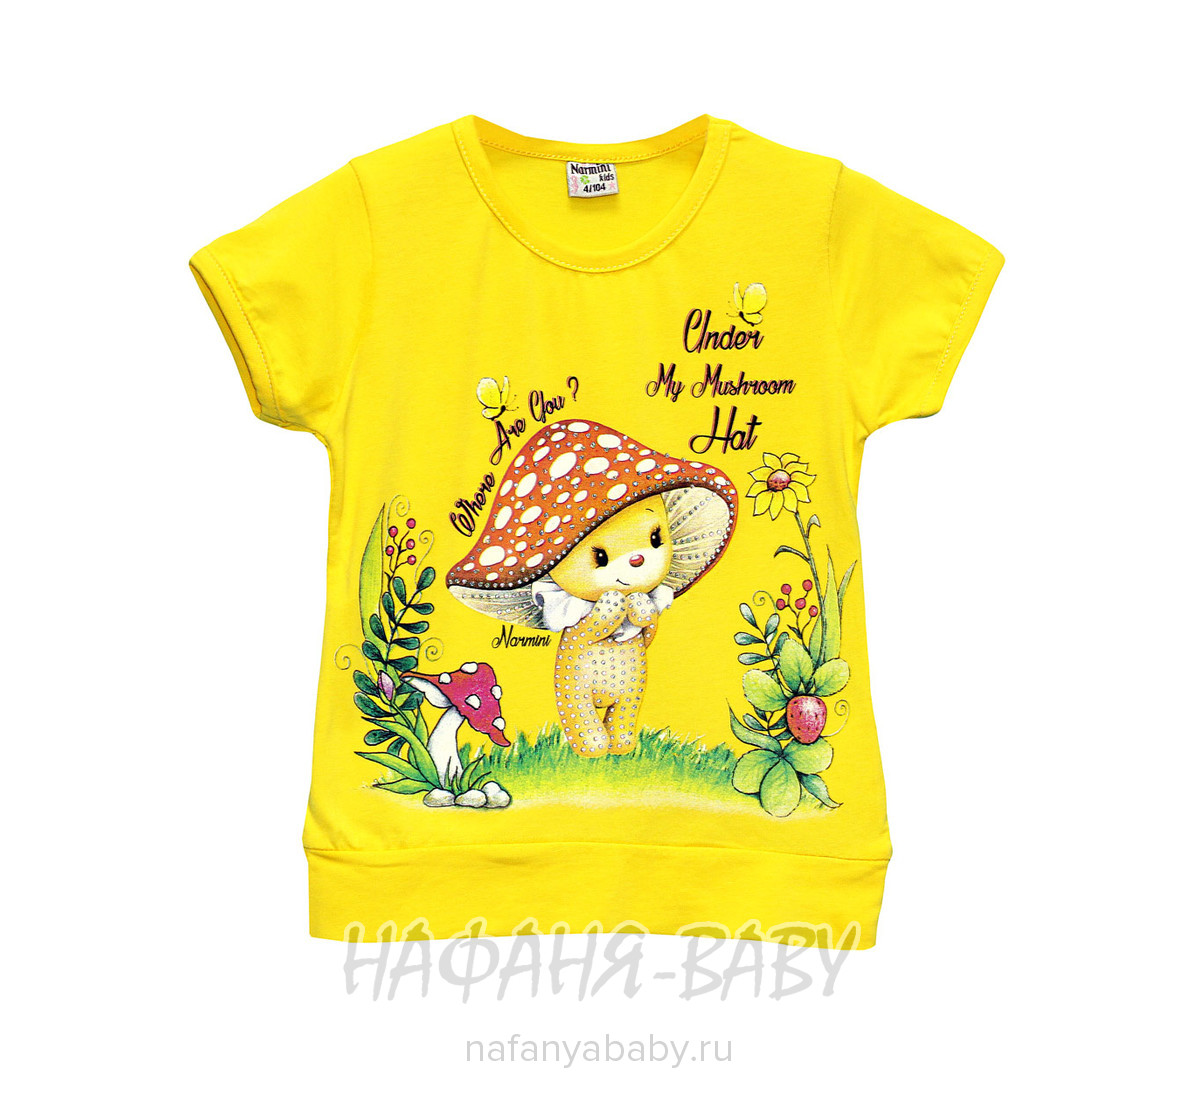 Детская футболка NARMINI арт: 5509, 1-4 года, цвет аквамариновый, оптом Турция